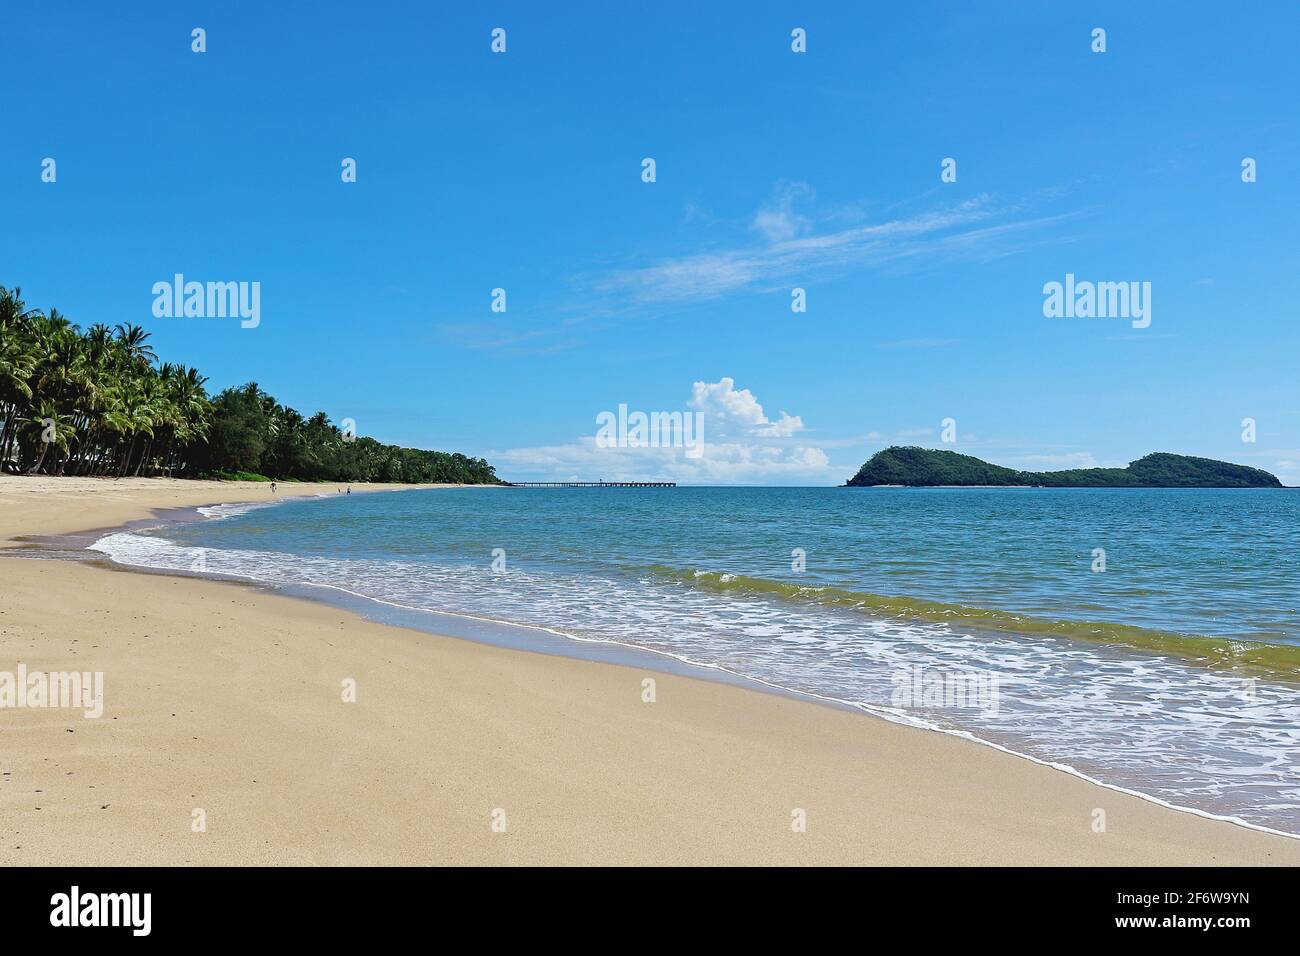 Une autre journée au paradis... vue sur la plage et l'île à Palm Cove, Cairns Queensland Australie Banque D'Images